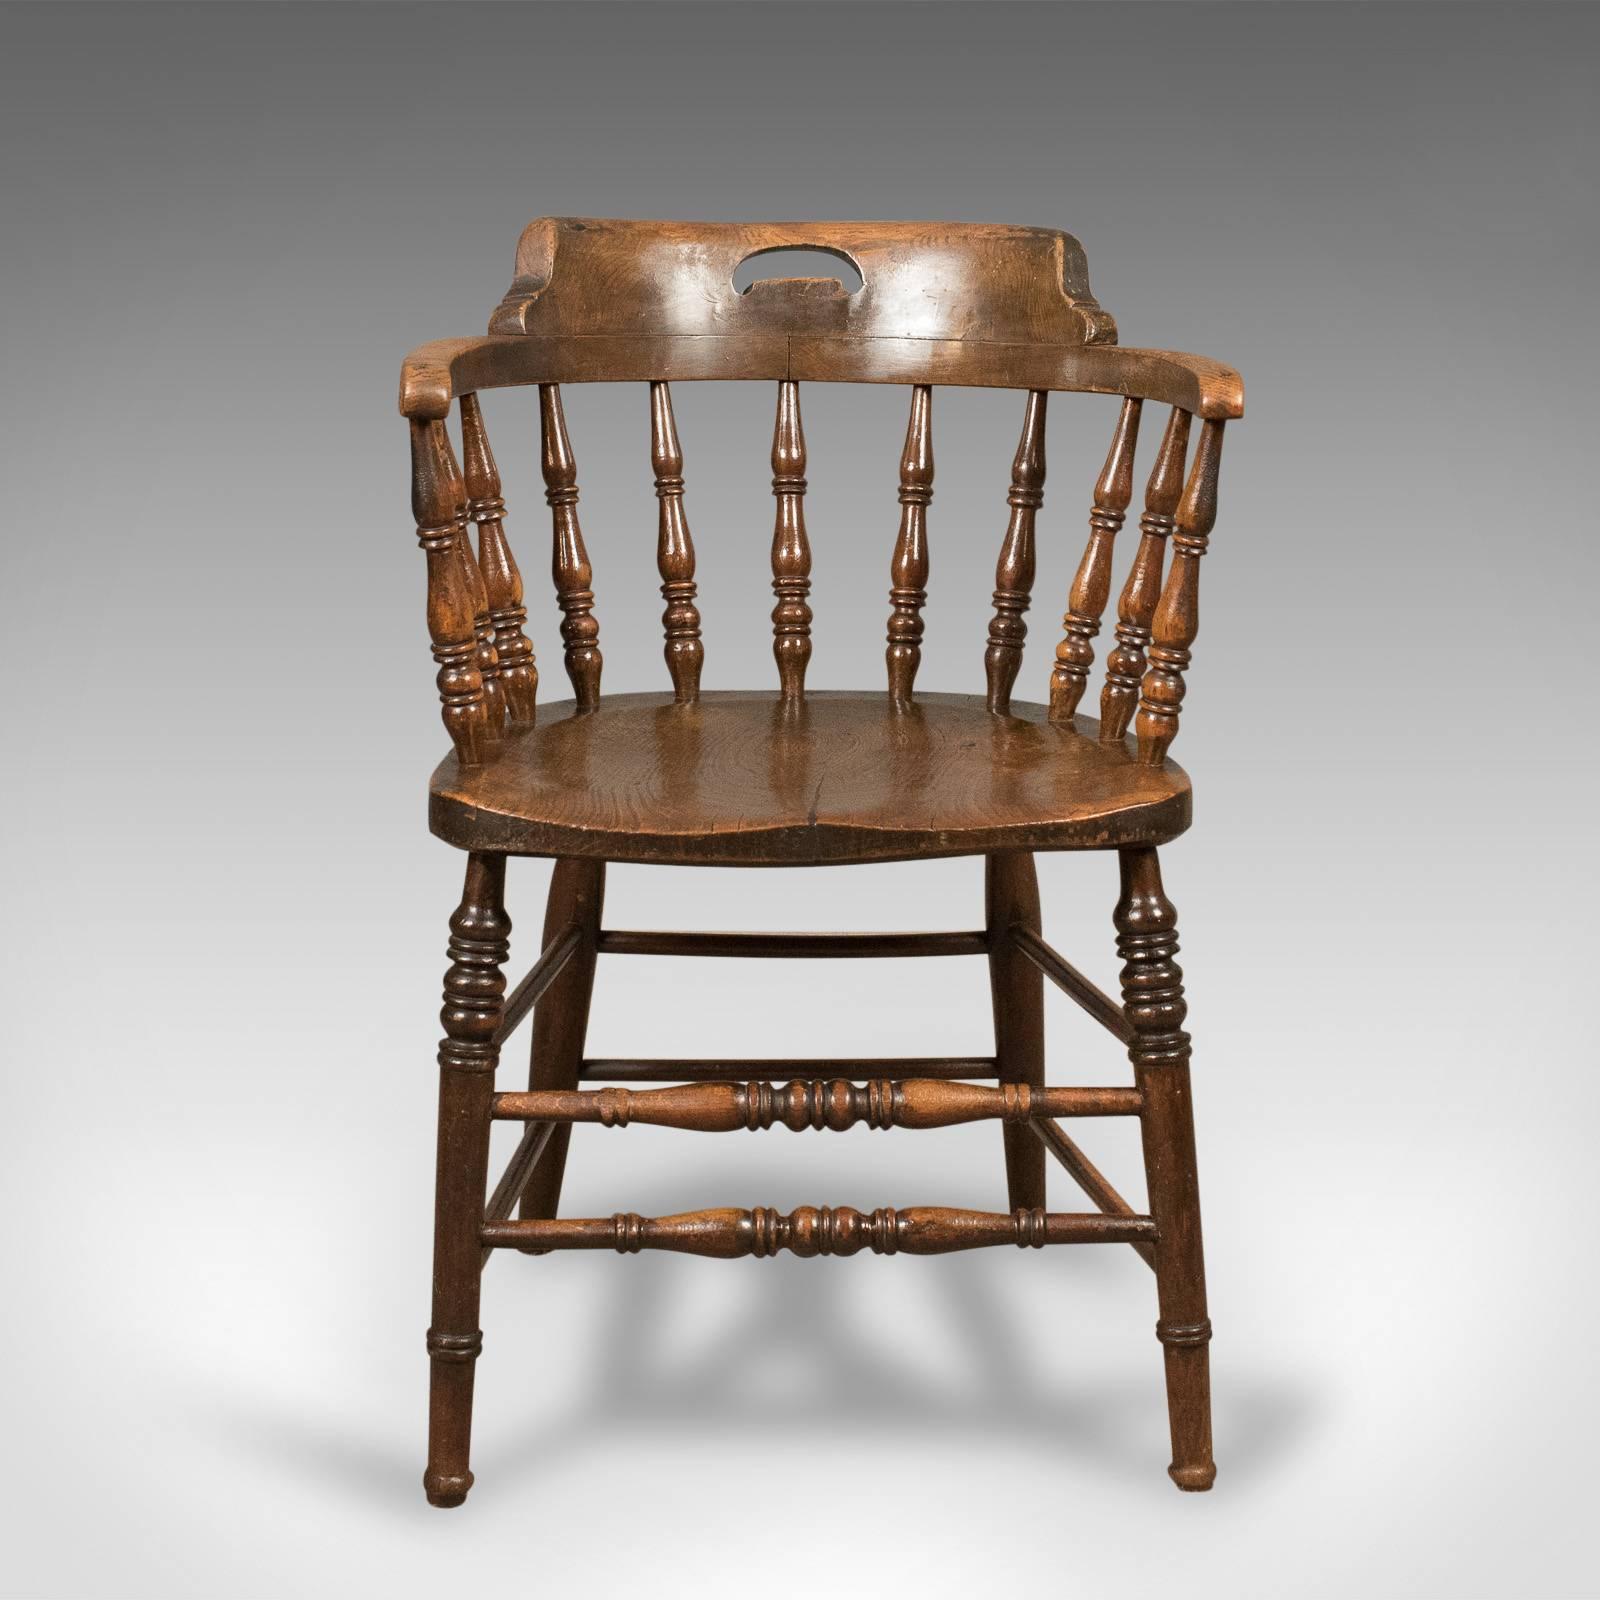 Dies ist ein viktorianischer:: antiker Stuhl mit niedriger Rückenlehne:: der manchmal auch als 